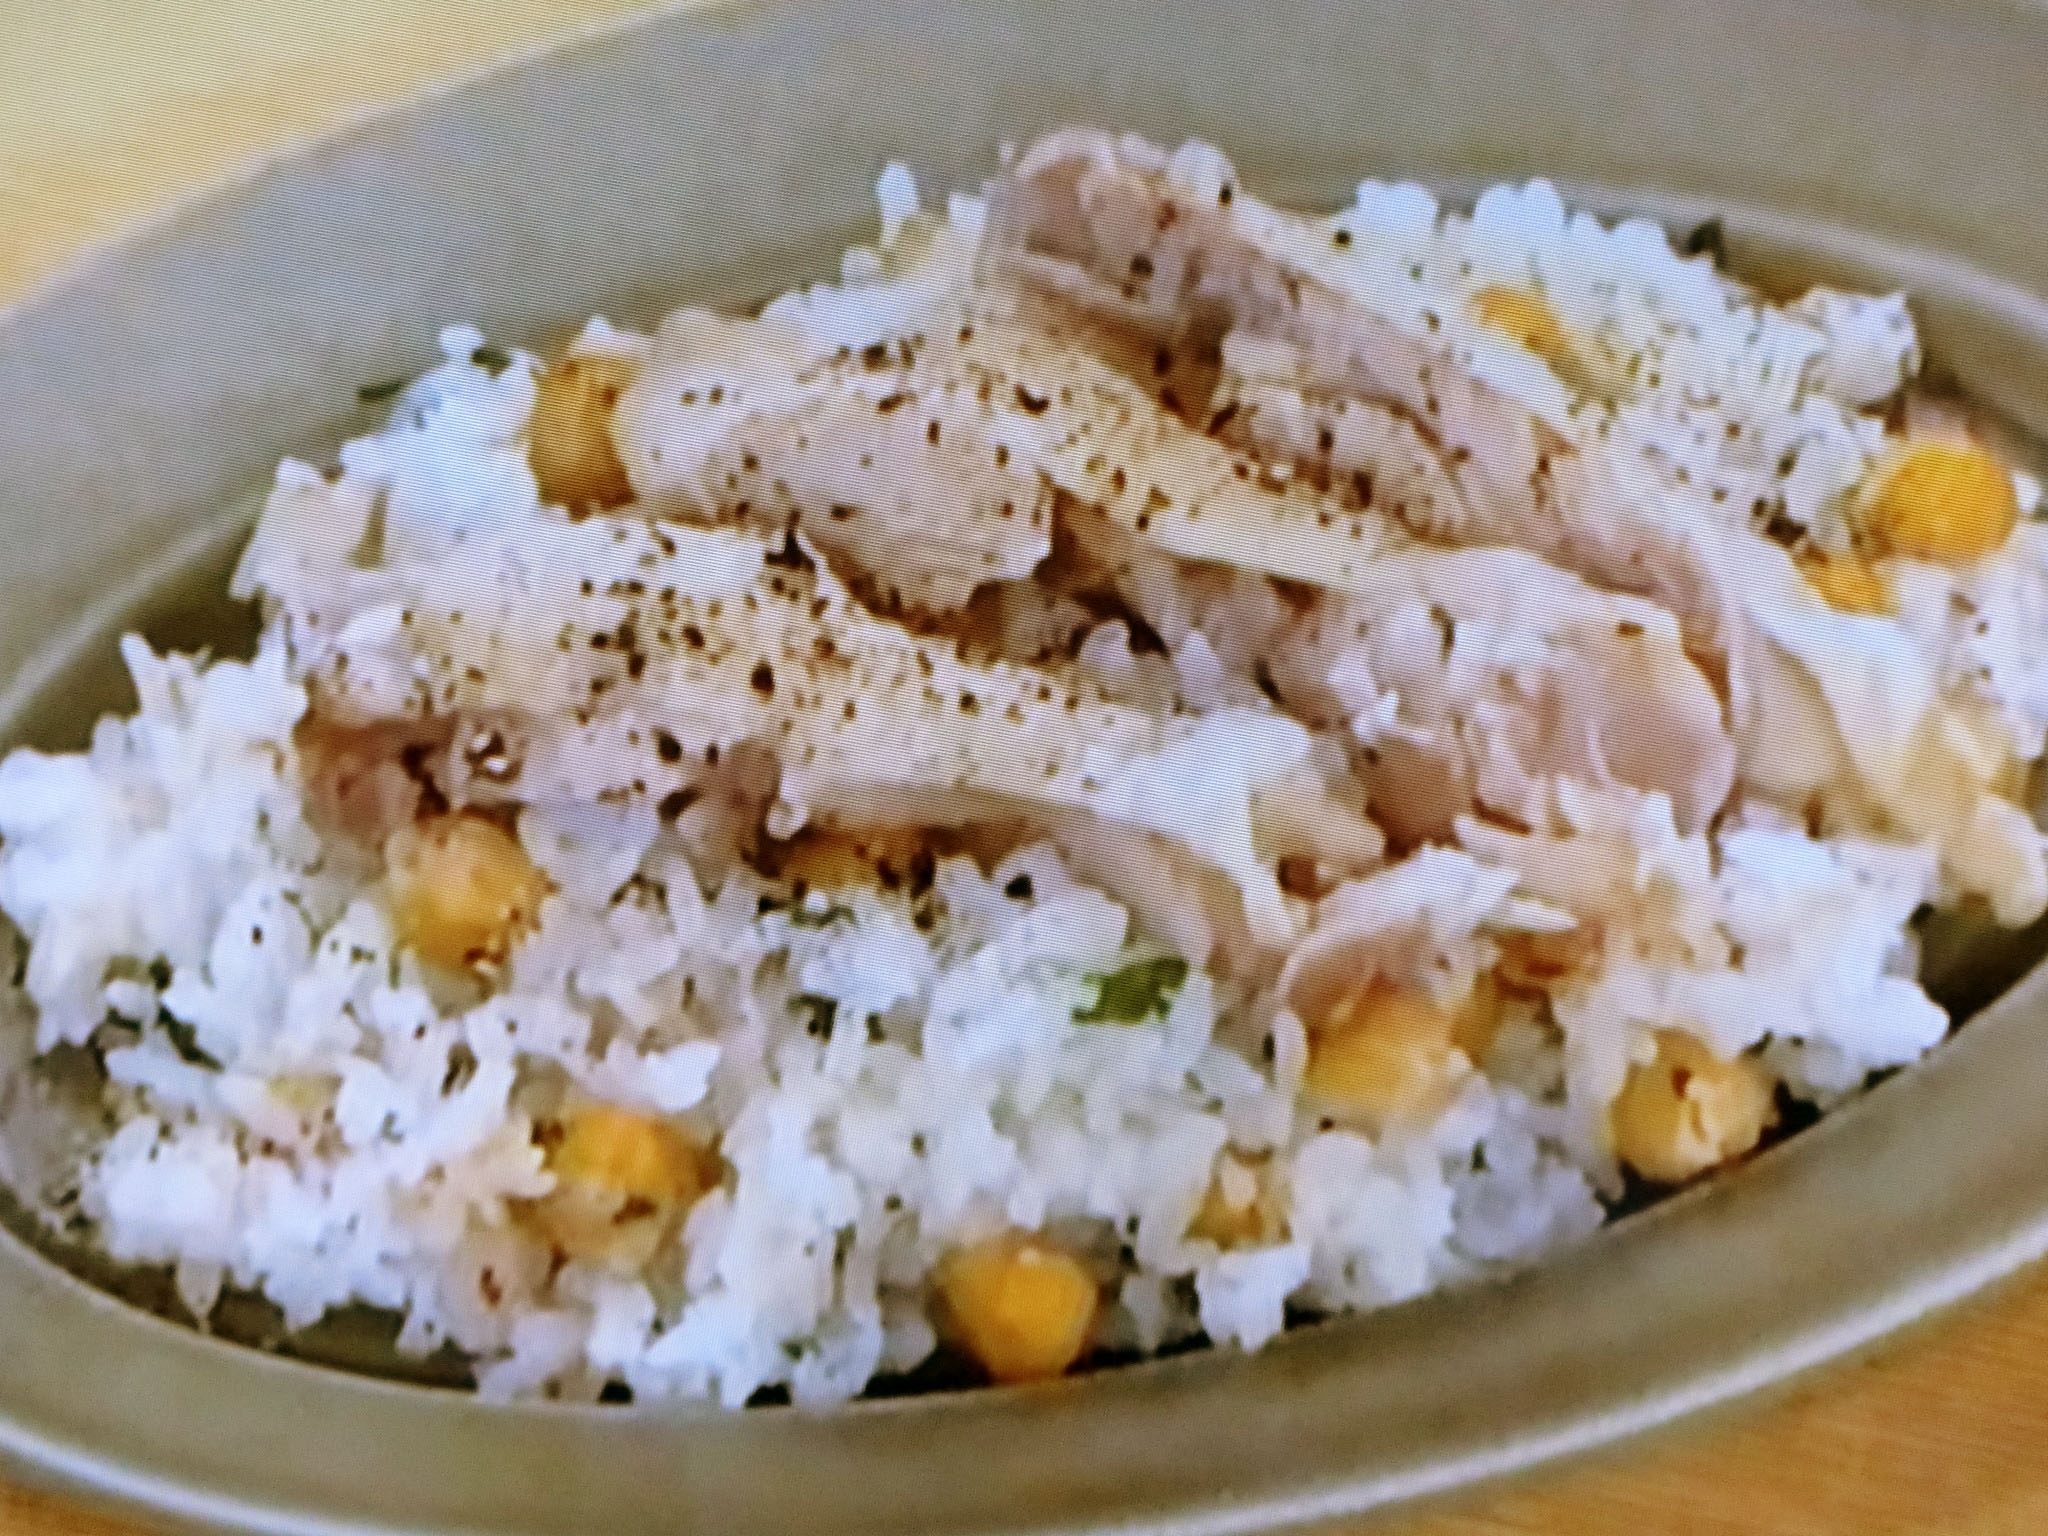 NHKあさイチ「ひよこ豆と鶏肉の炊き込みごはん」のレシピbyほりえさわこみんな！ゴハンだよ 6月5日 おさらいキッチン